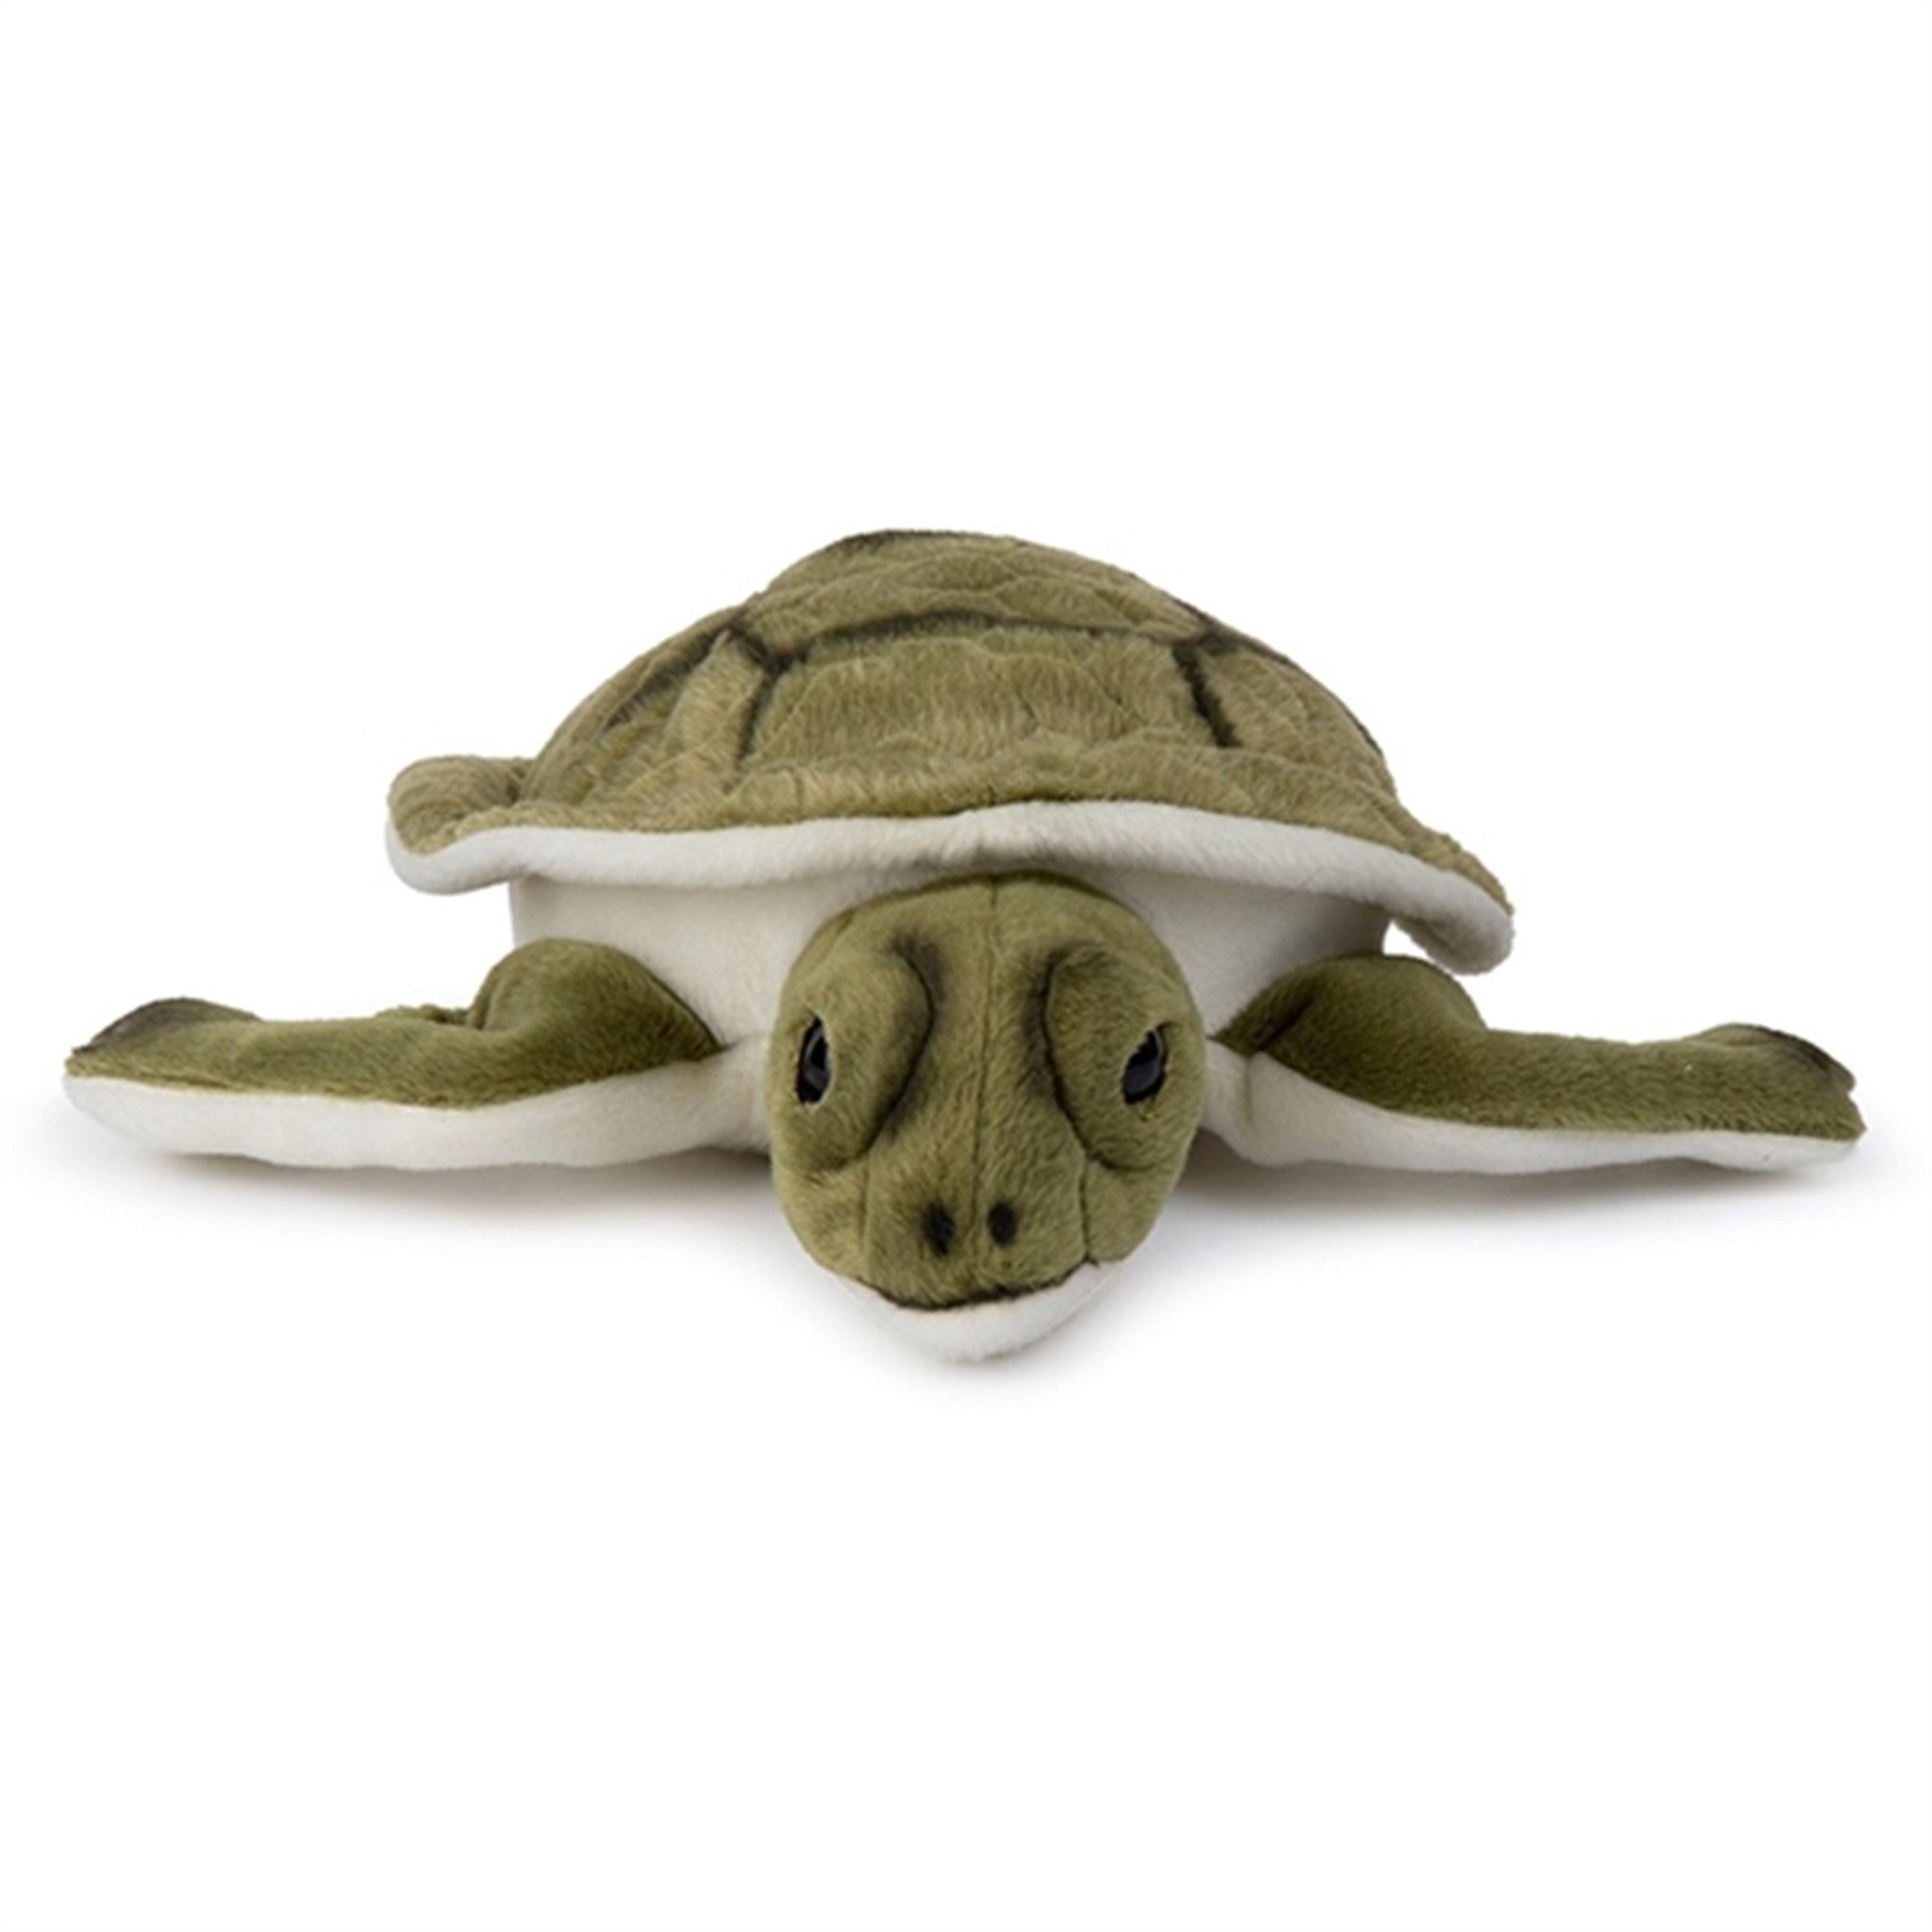 Bon Ton Toys WWF Plush Turtle 23 cm 2